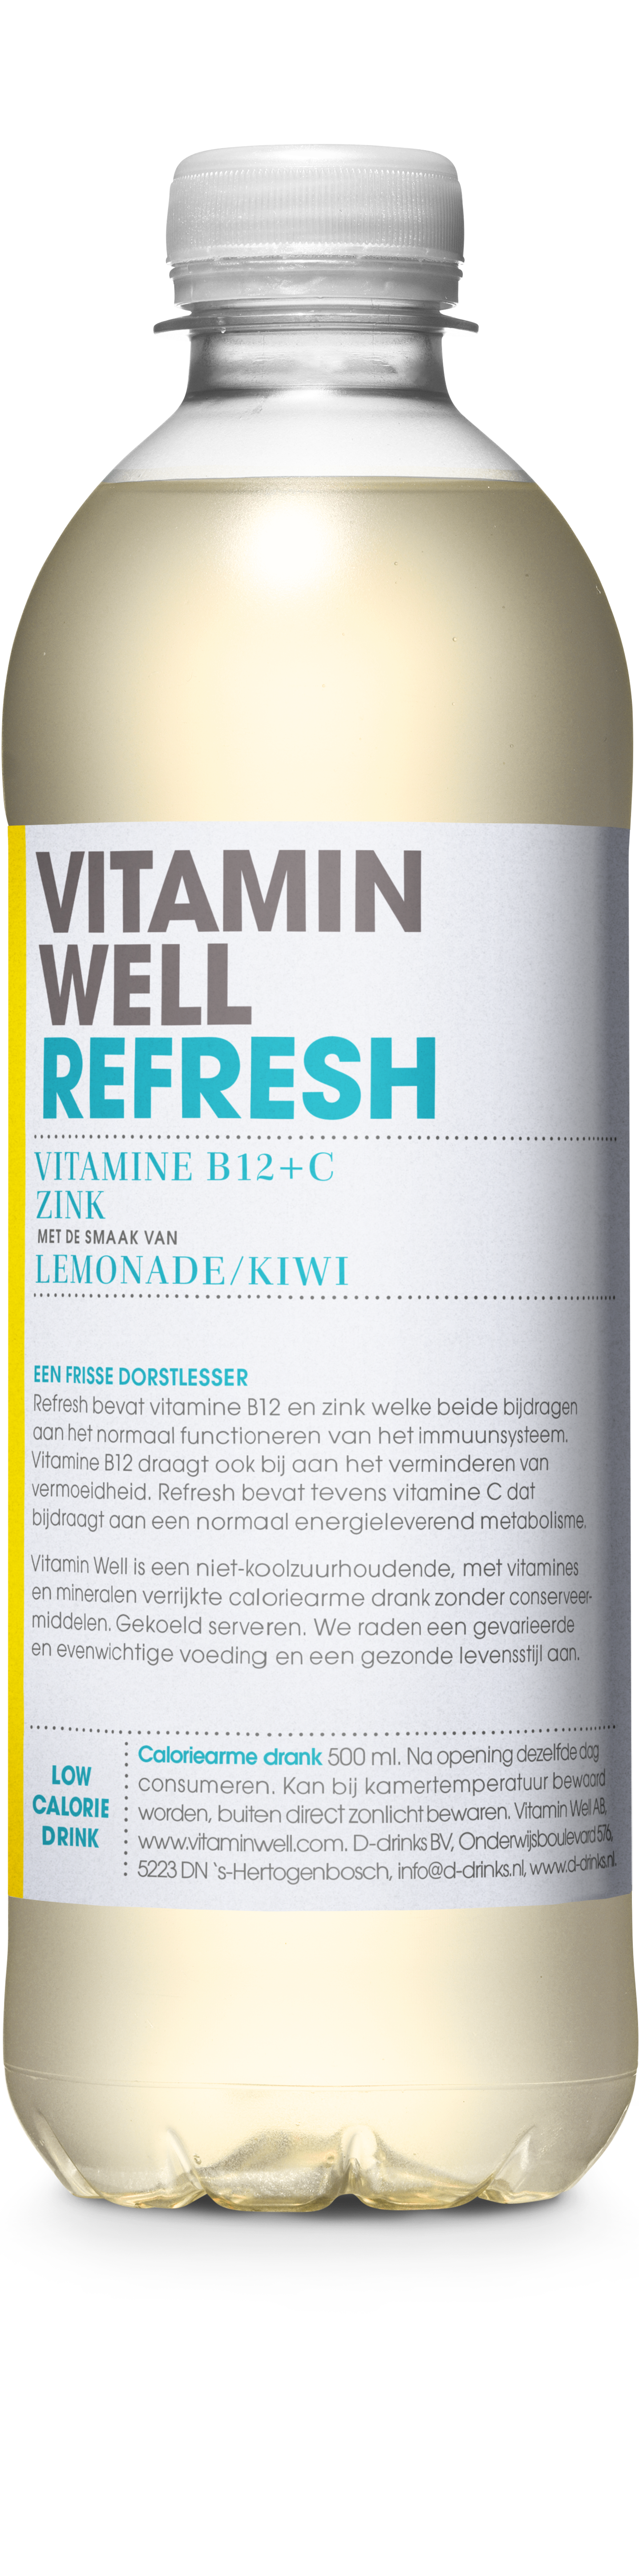 Refresh (Lemon/Kiwi) *vegan